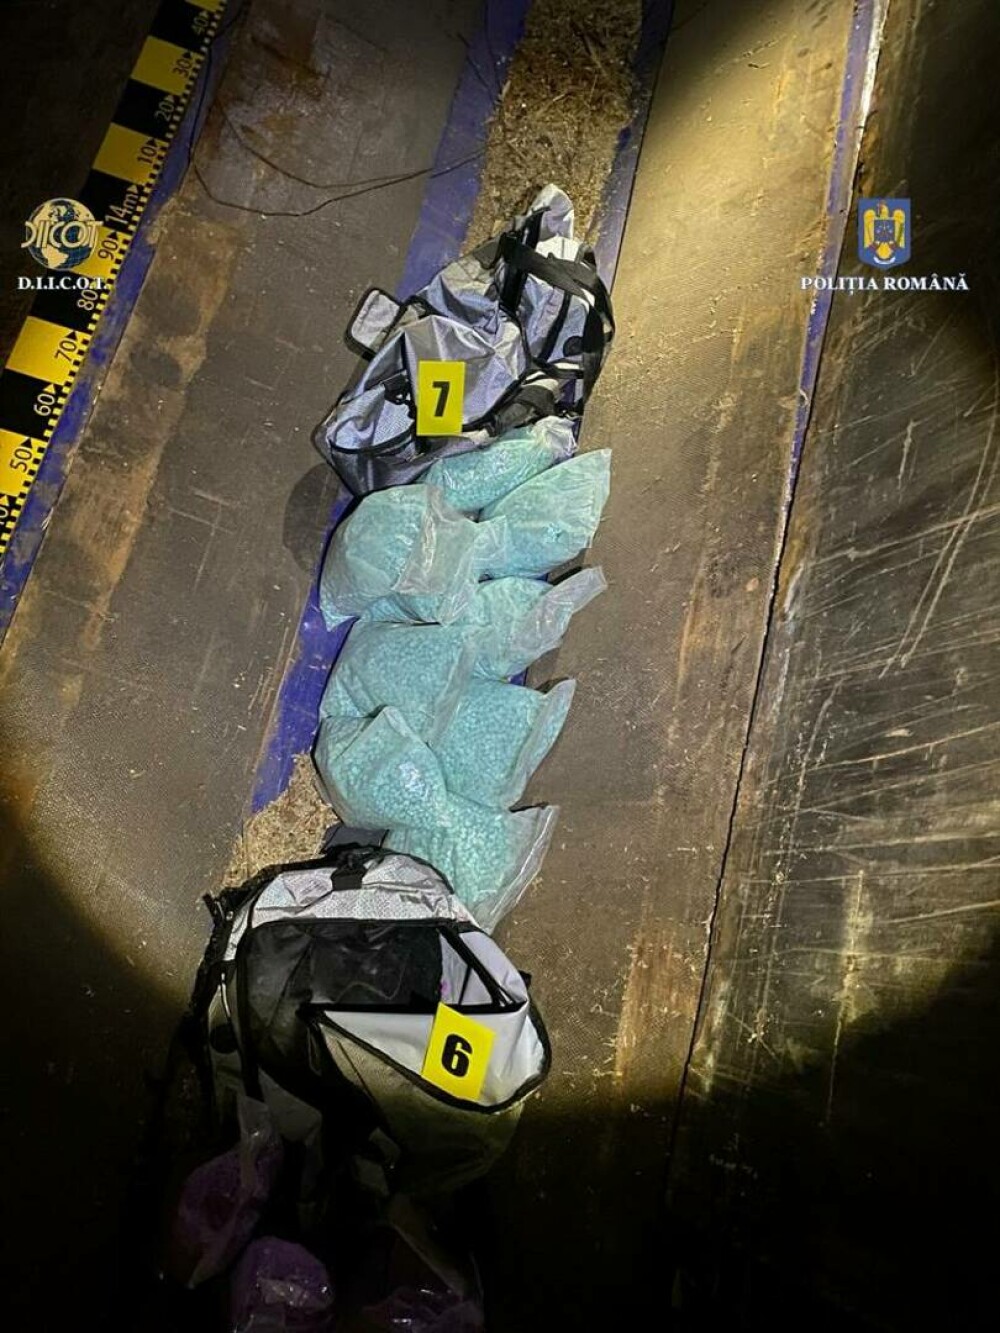 Captură record de droguri în județul Argeș. Polițiștii au descoperit ecstasy în valoare de 4.000.000 de euro | FOTO - Imaginea 3